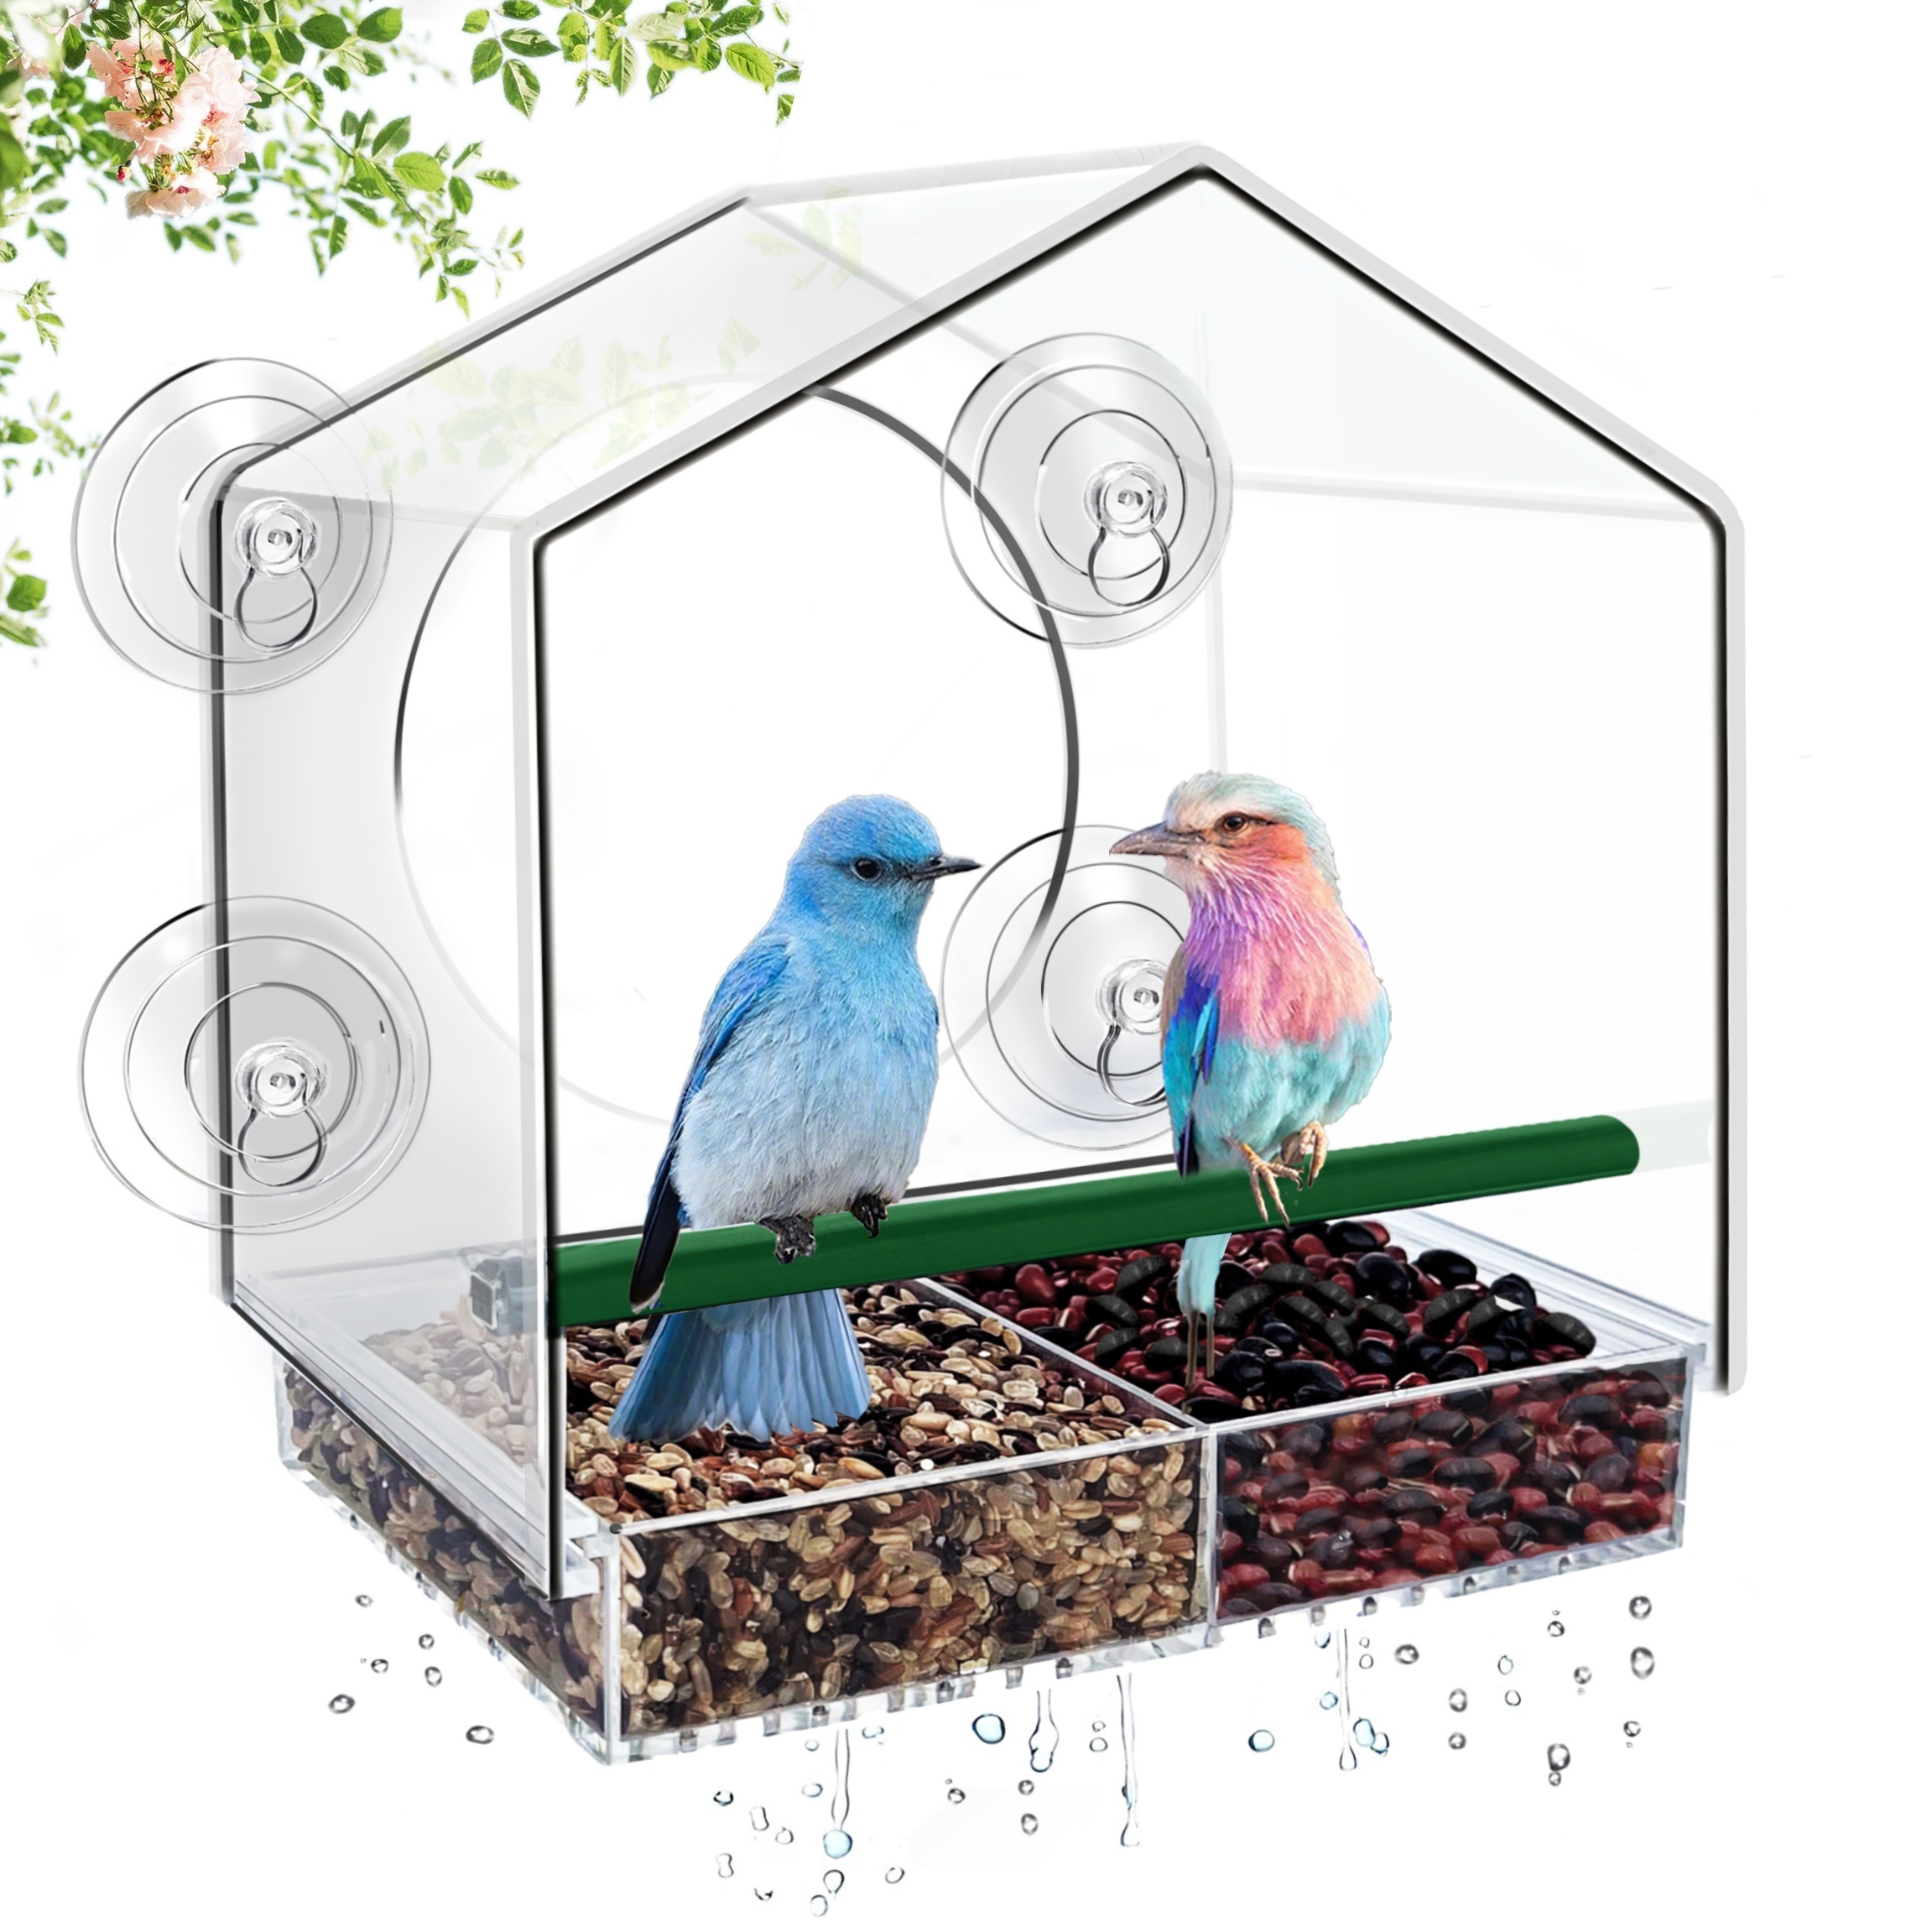  VUDECO Acrylic Clear Window Bird Feeder with Strong